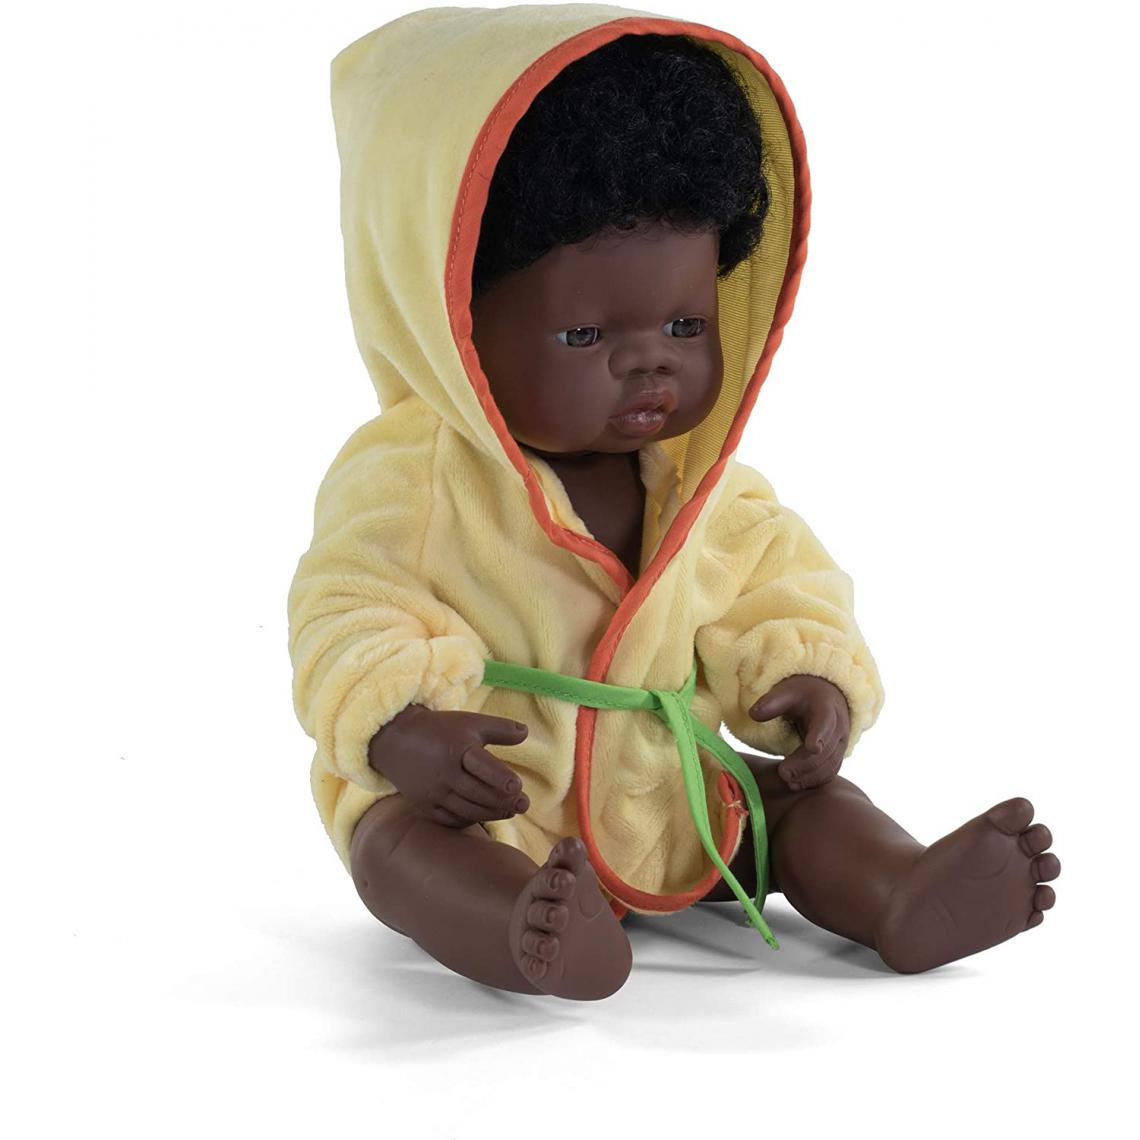 Miniland - Miniland Miniland31053 38 cm poupée garçon Afrique sans sous-vêtements - Poupons